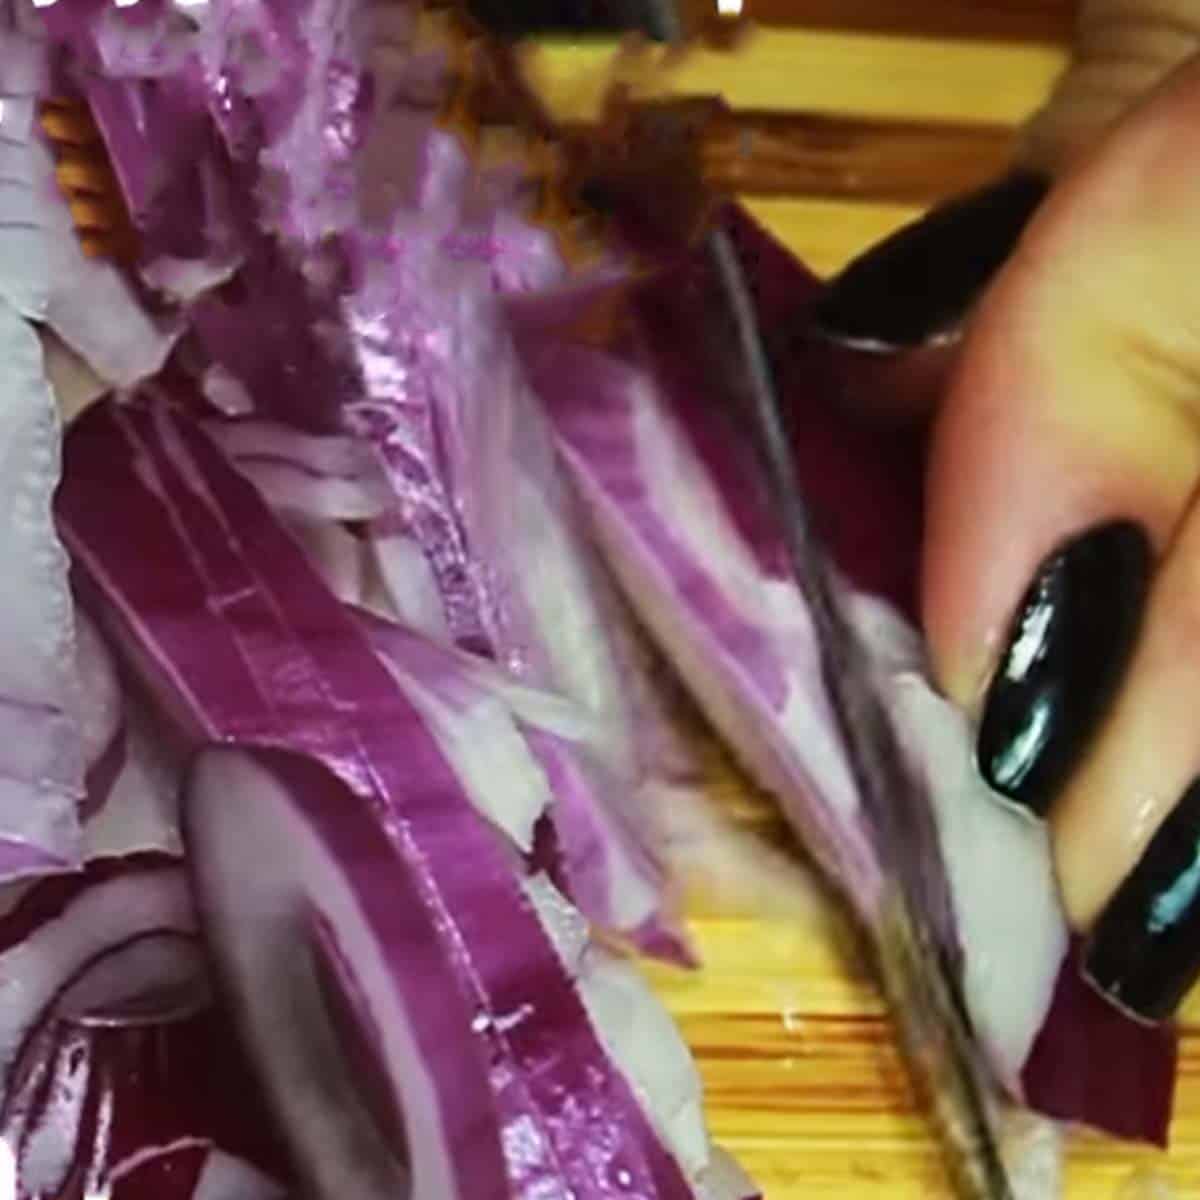 cortando a cebola